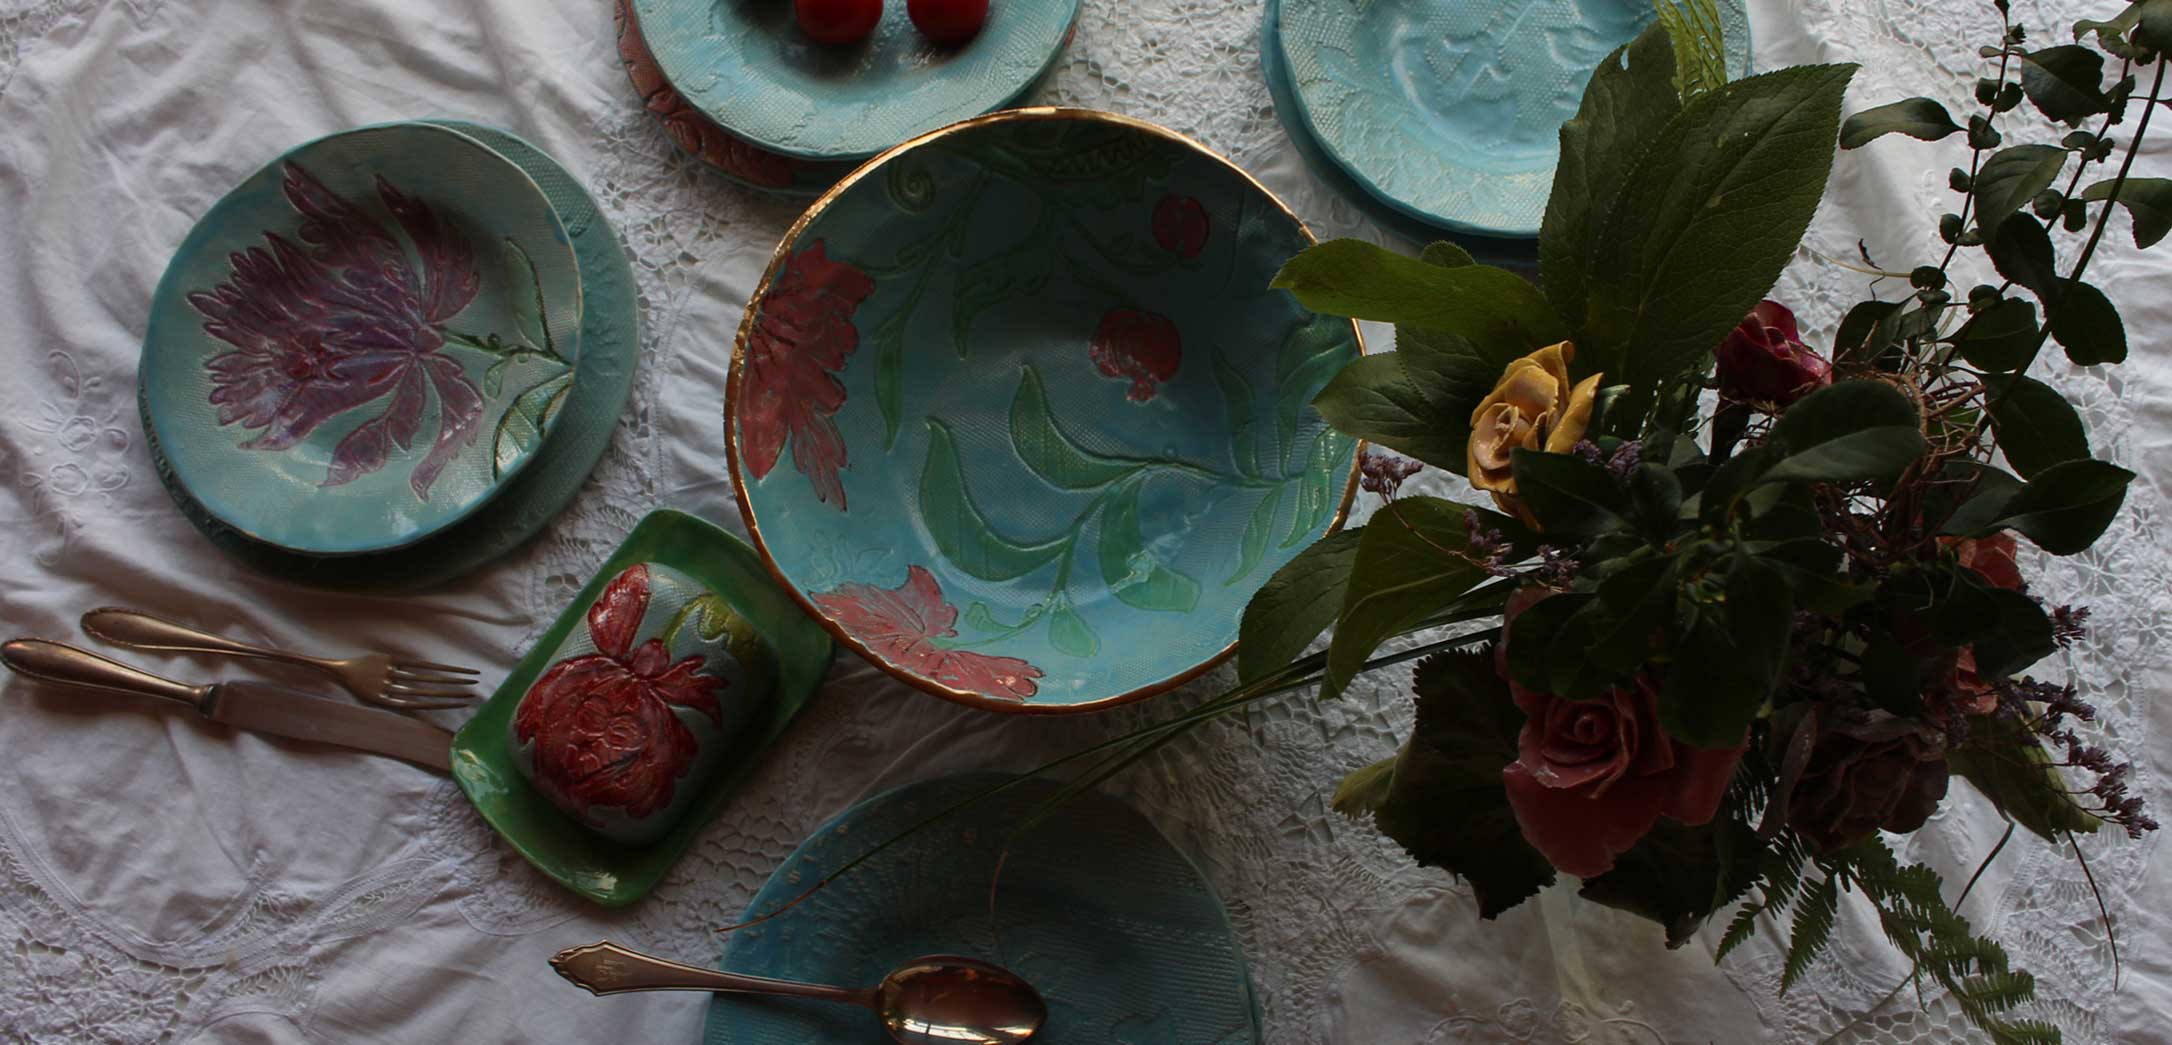 Nahaufnahme gedeckter Tisch mit türkisem Keramikgeschirr